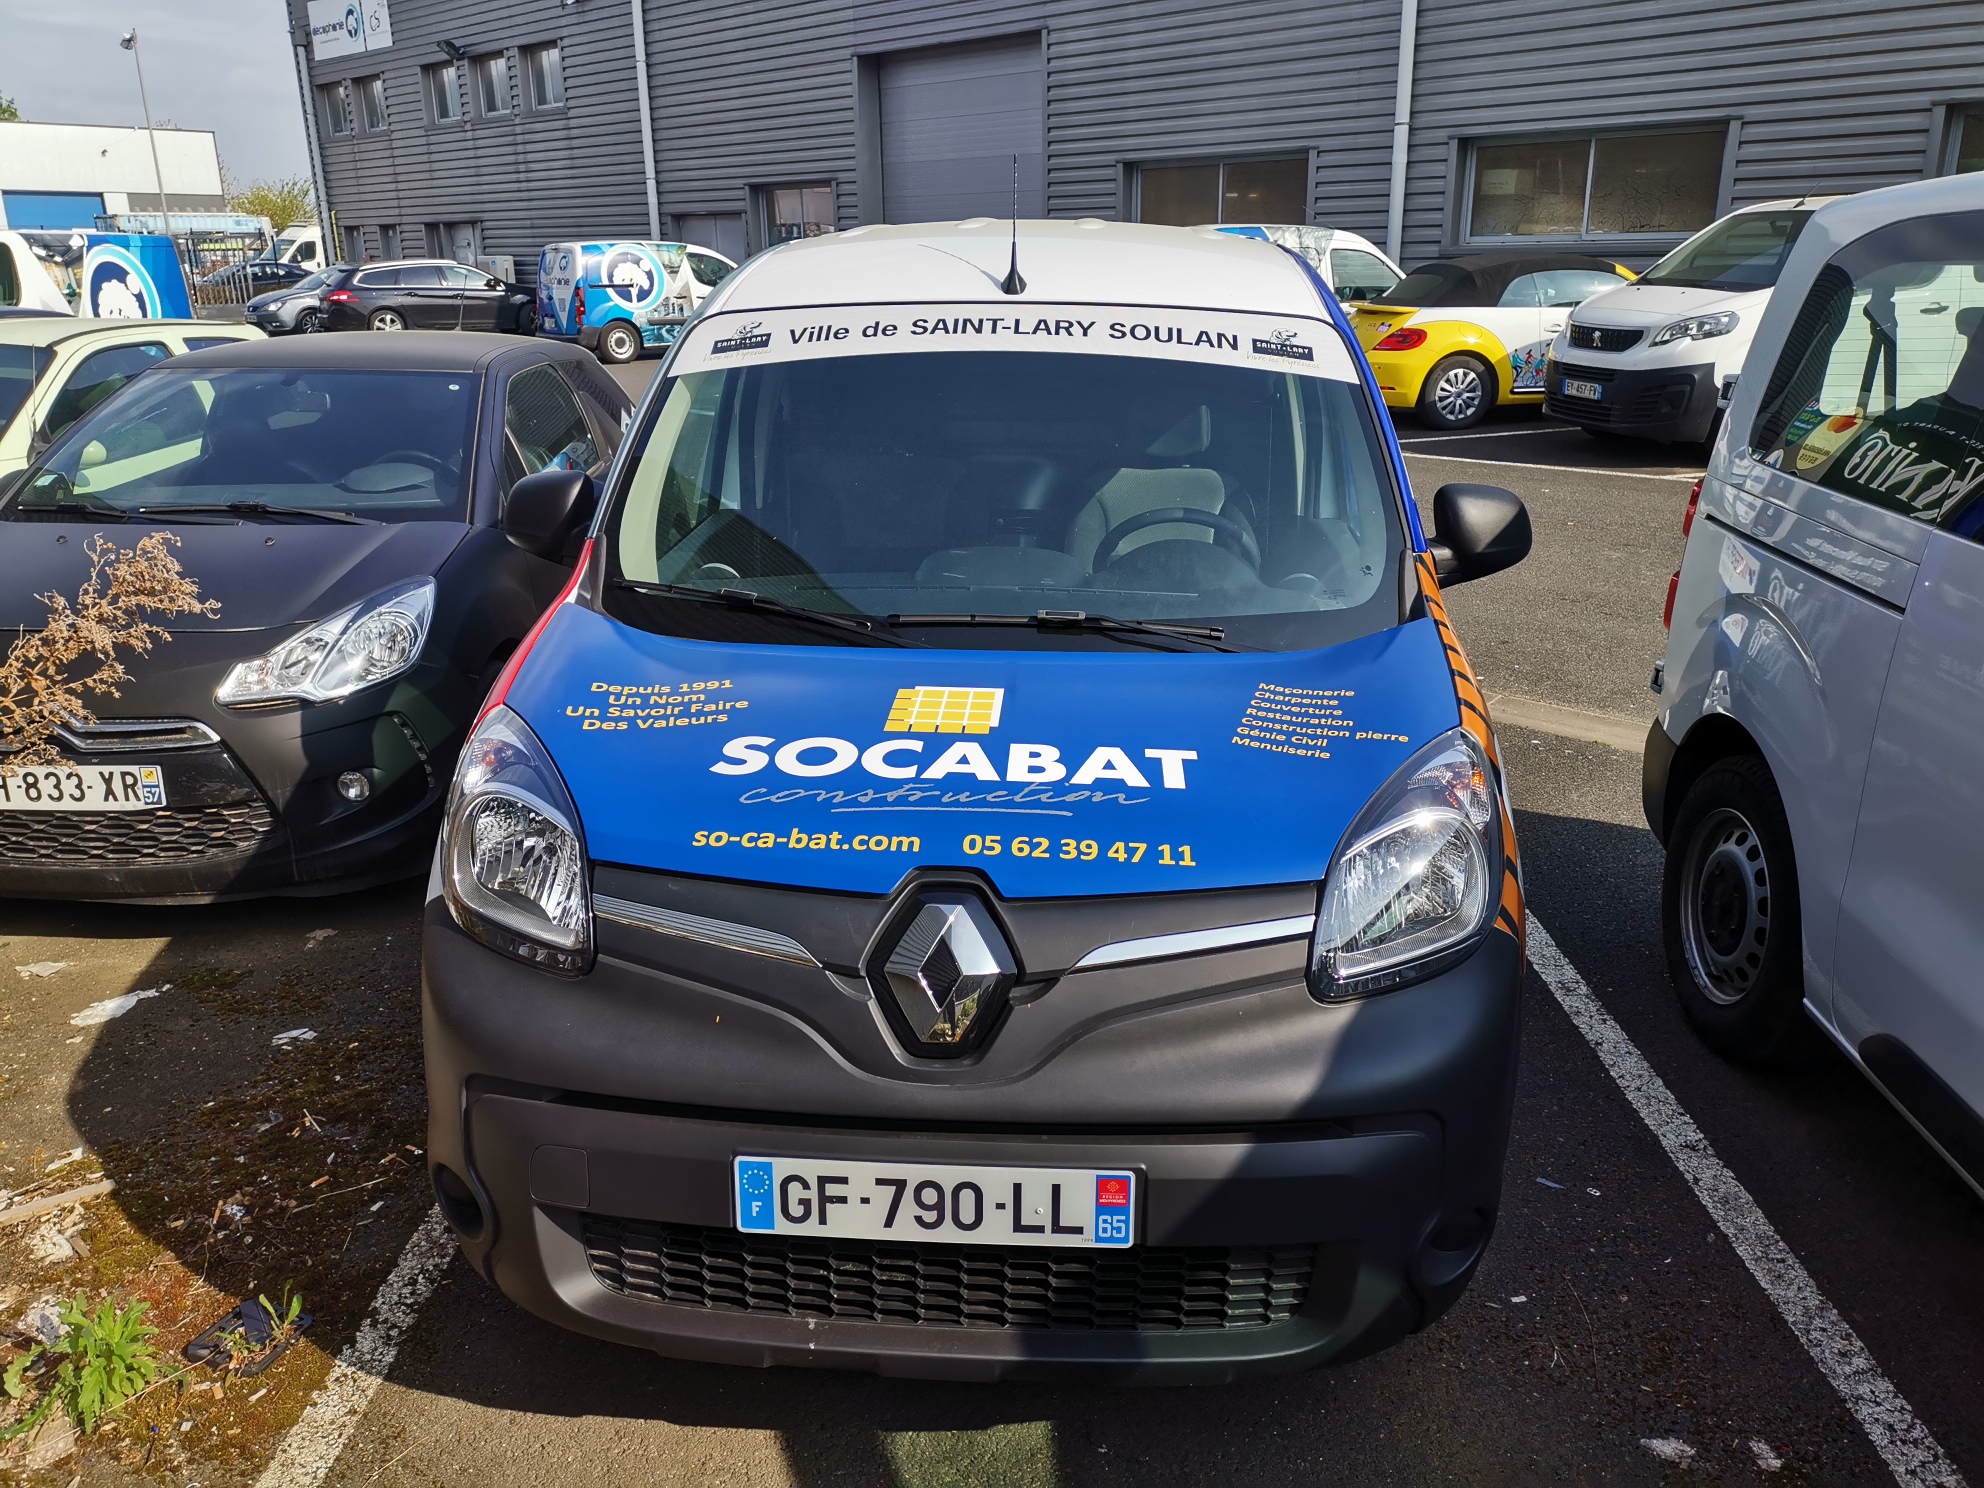 SOCABAT partenaire du nouvel utilitaire électrique de la commune de Saint-Lary Soulan